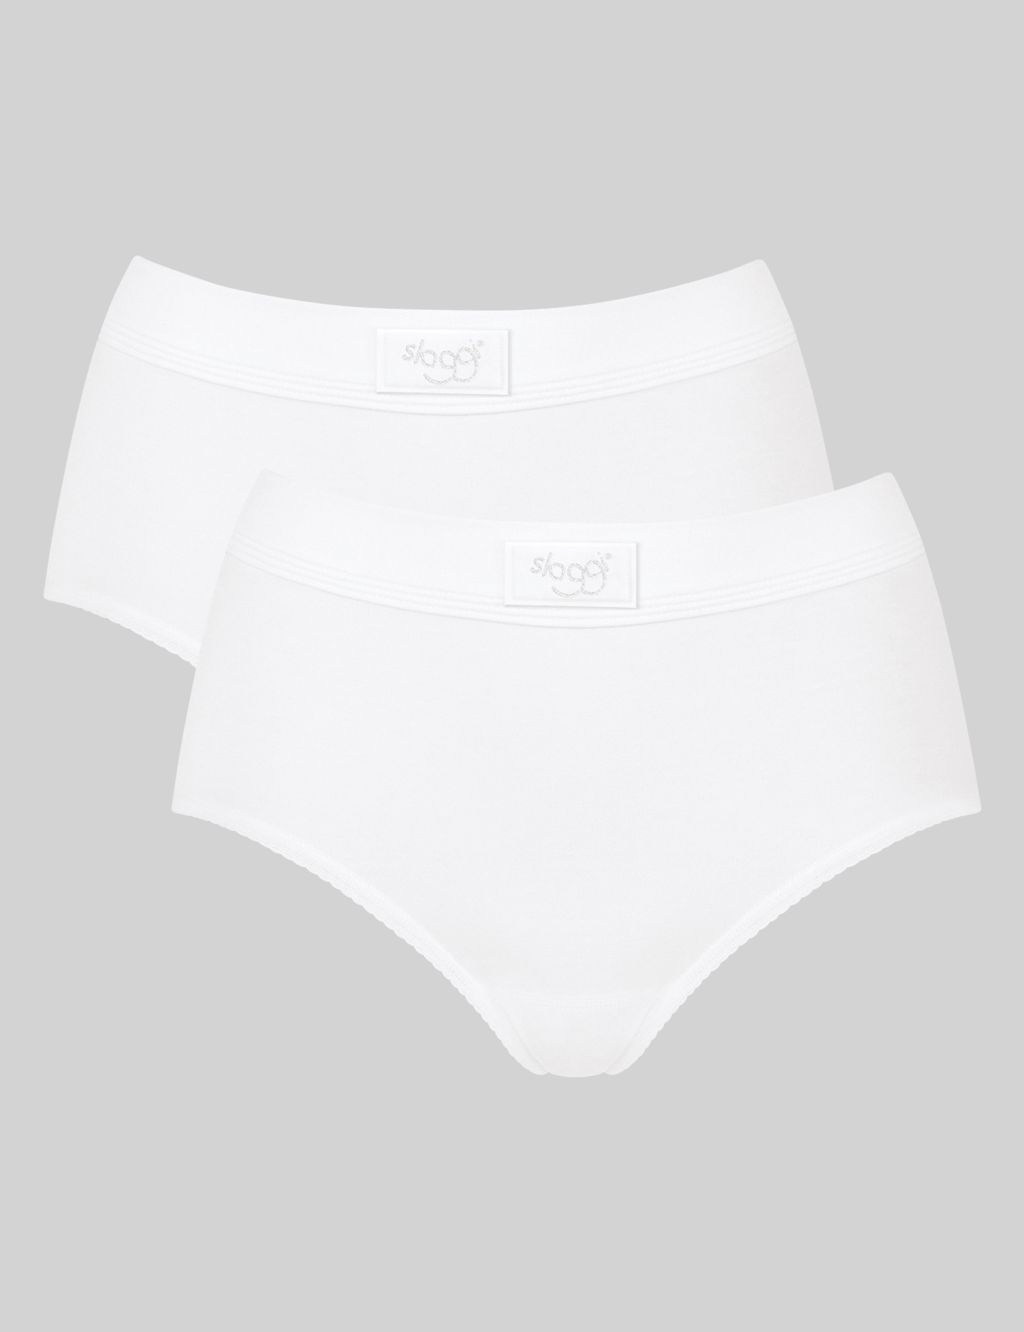 Sloggi WOW Comfort Tai Briefs Mid Rise Lined Bikini Knickers Brief  Lingerie, Ecru White, X-Small